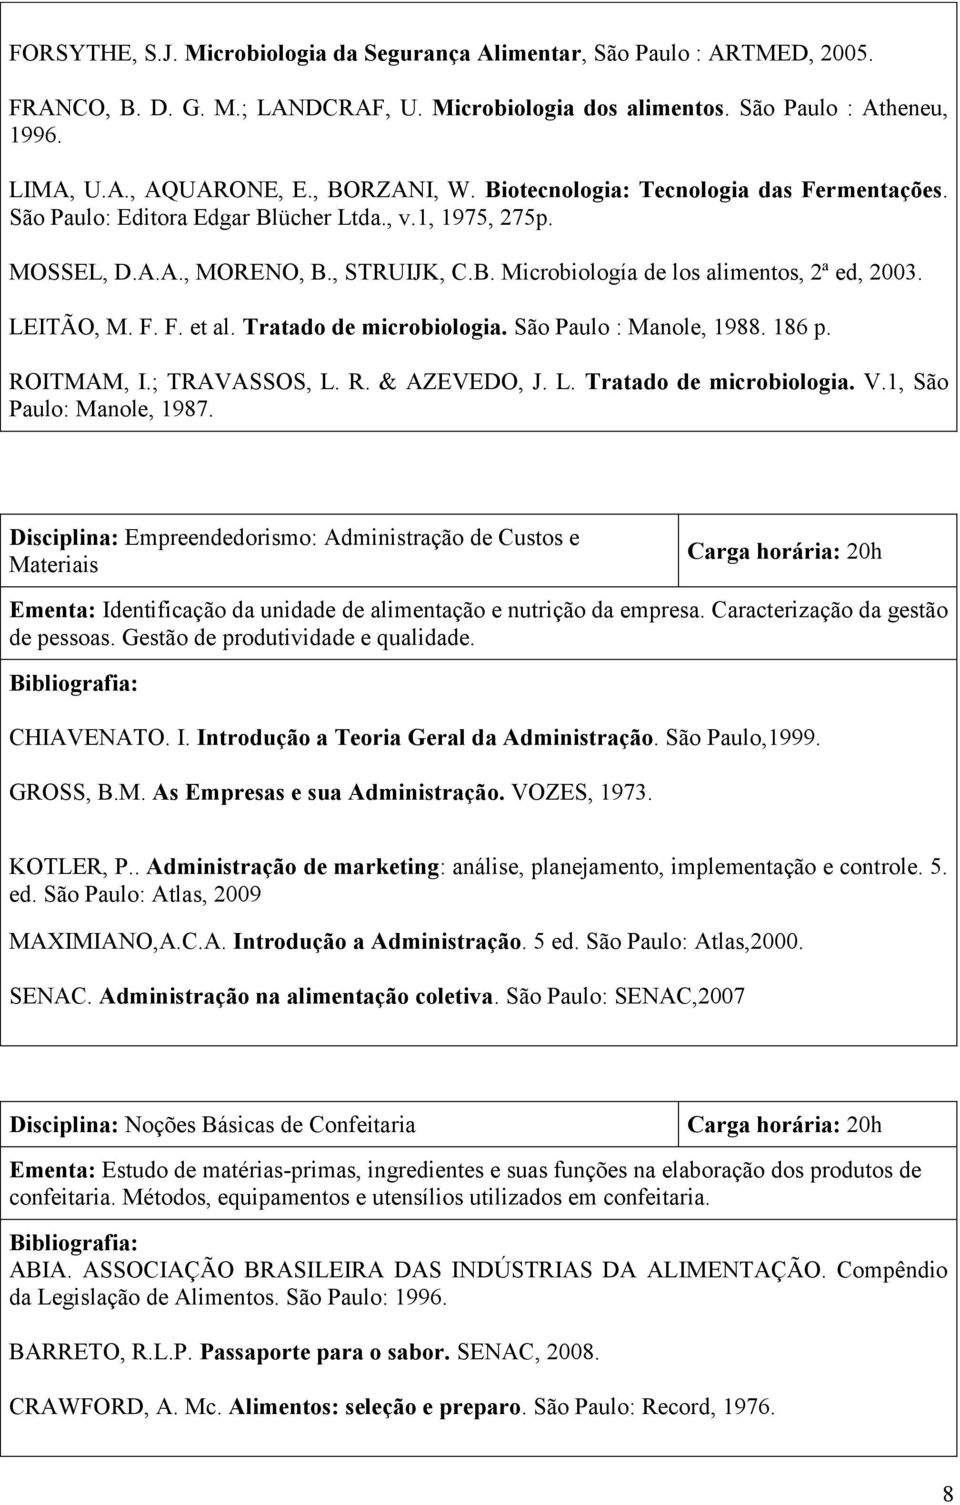 LEITÃO, M. F. F. et al. Tratado de microbiologia. São Paulo : Manole, 1988. 186 p. ROITMAM, I.; TRAVASSOS, L. R. & AZEVEDO, J. L. Tratado de microbiologia. V.1, São Paulo: Manole, 1987.